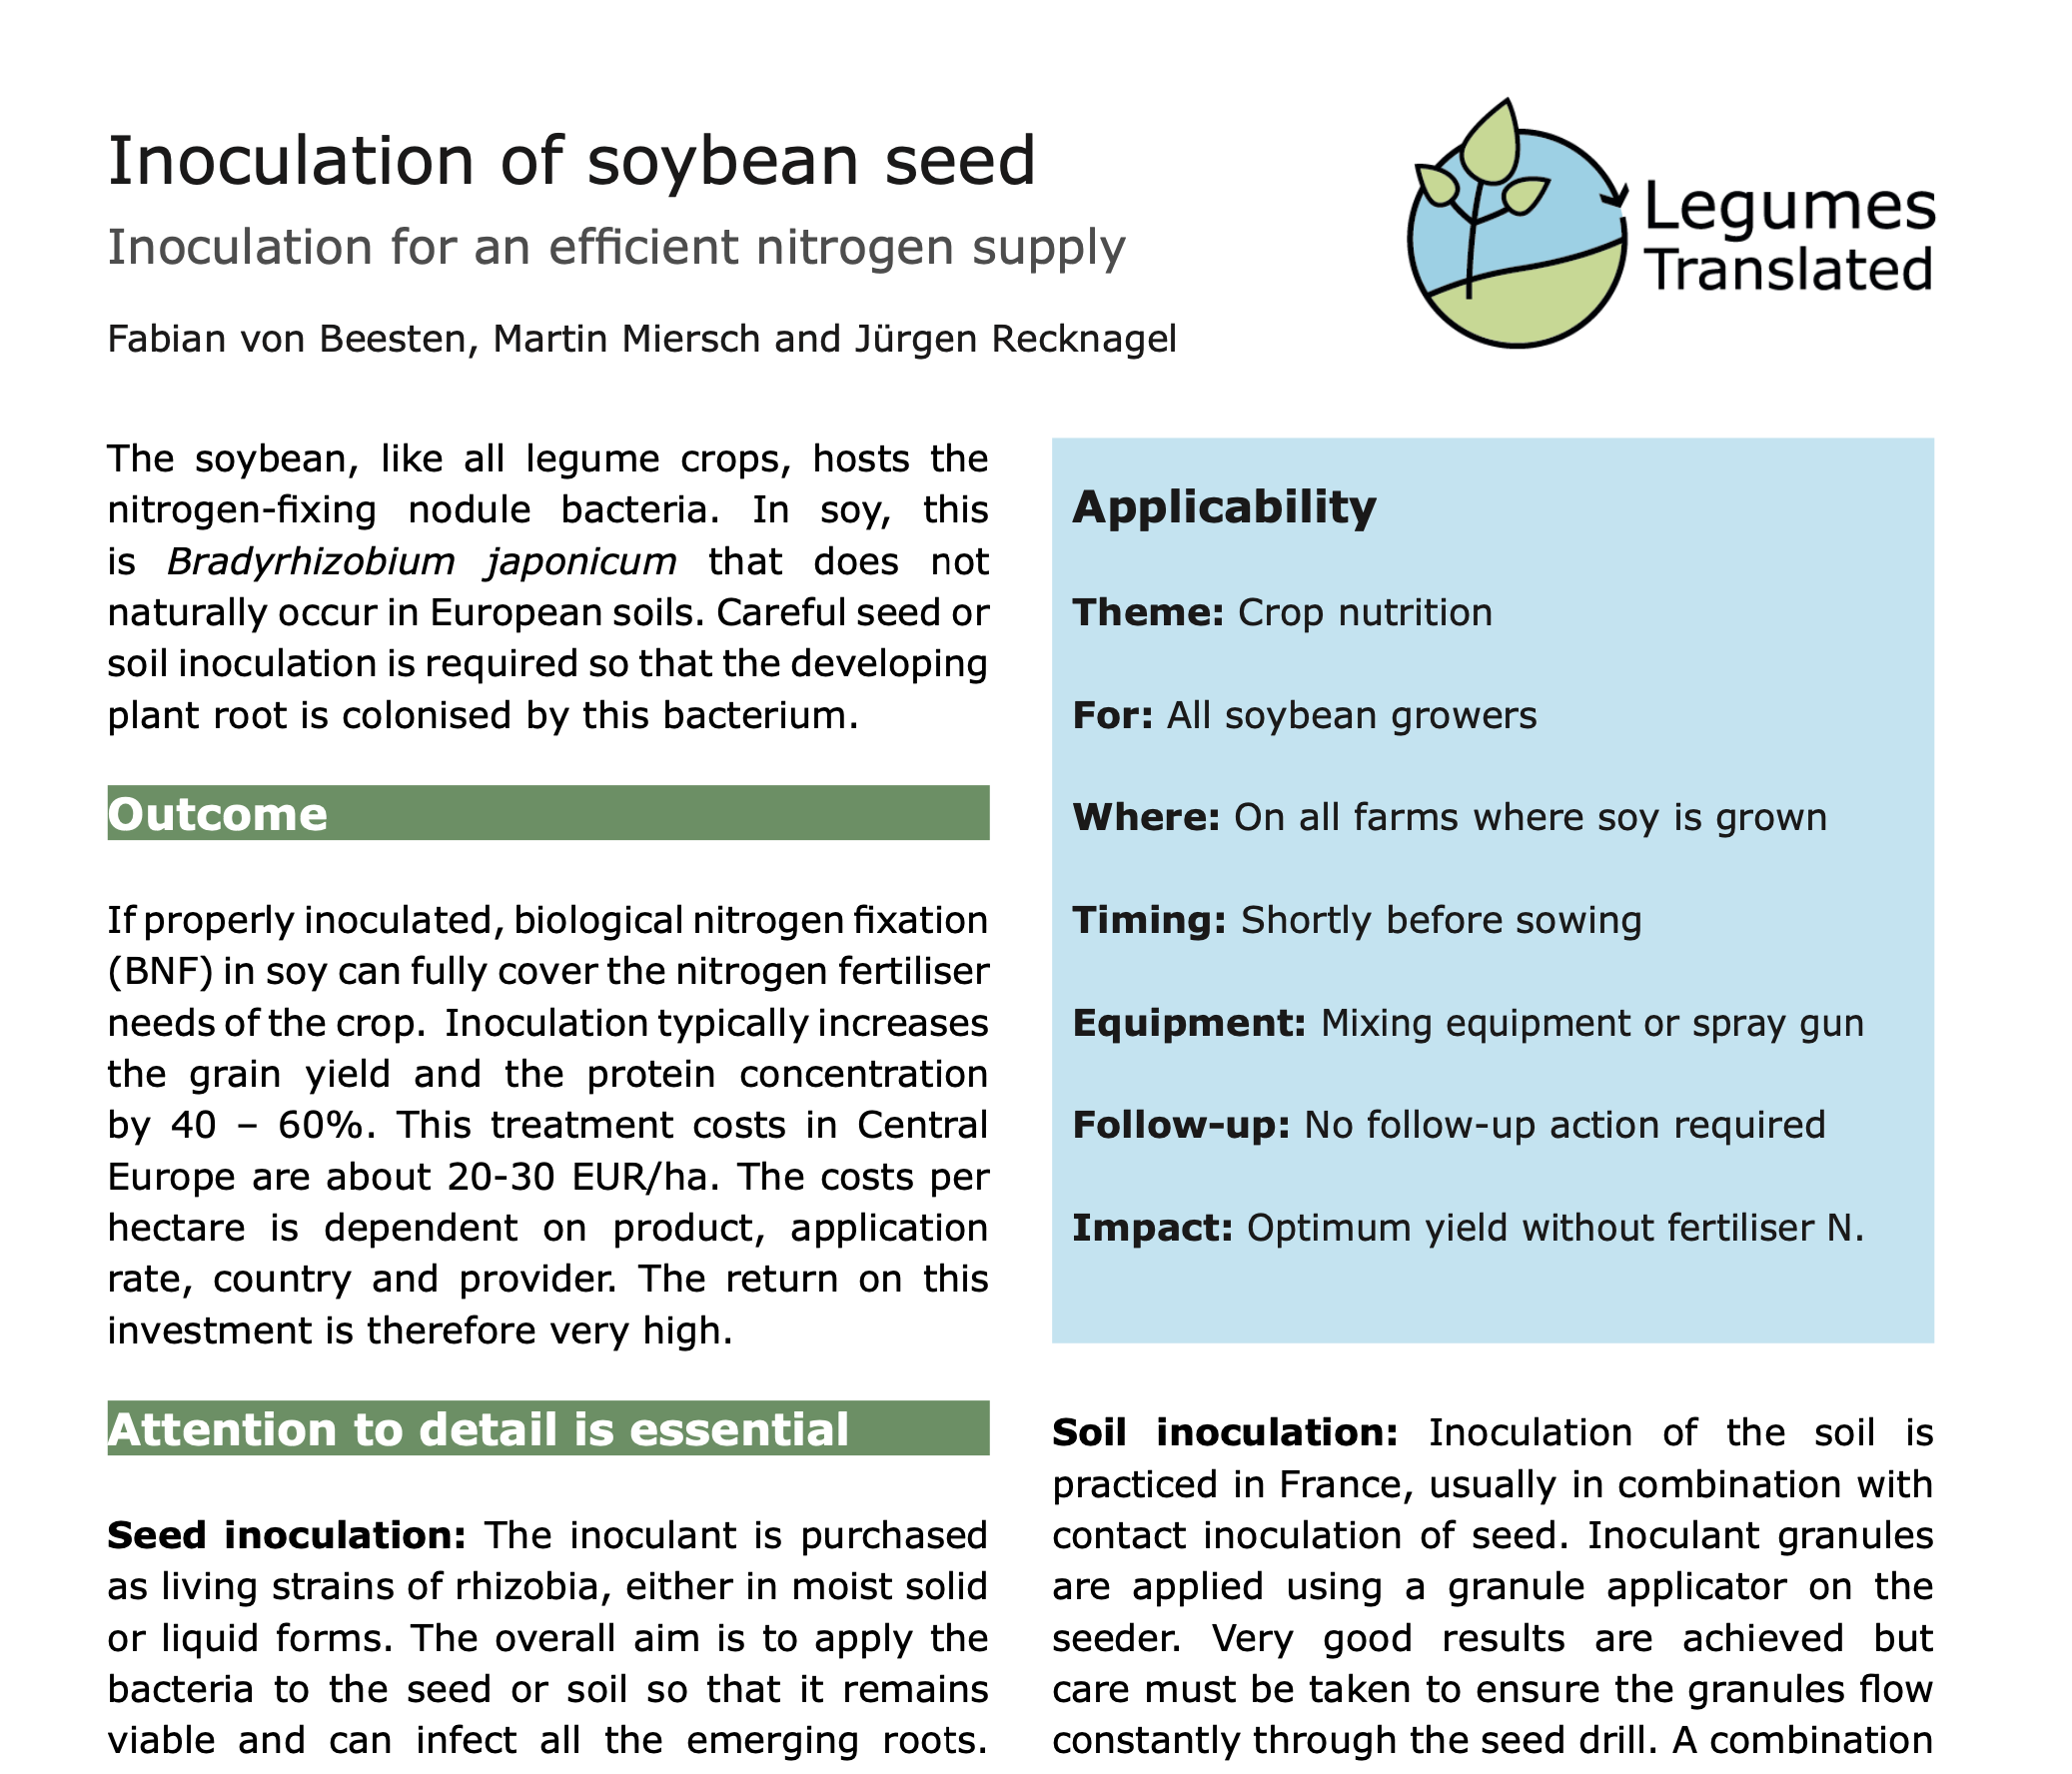 Инокулација семена соје – инокулација за ефикасно снабдевање азотом